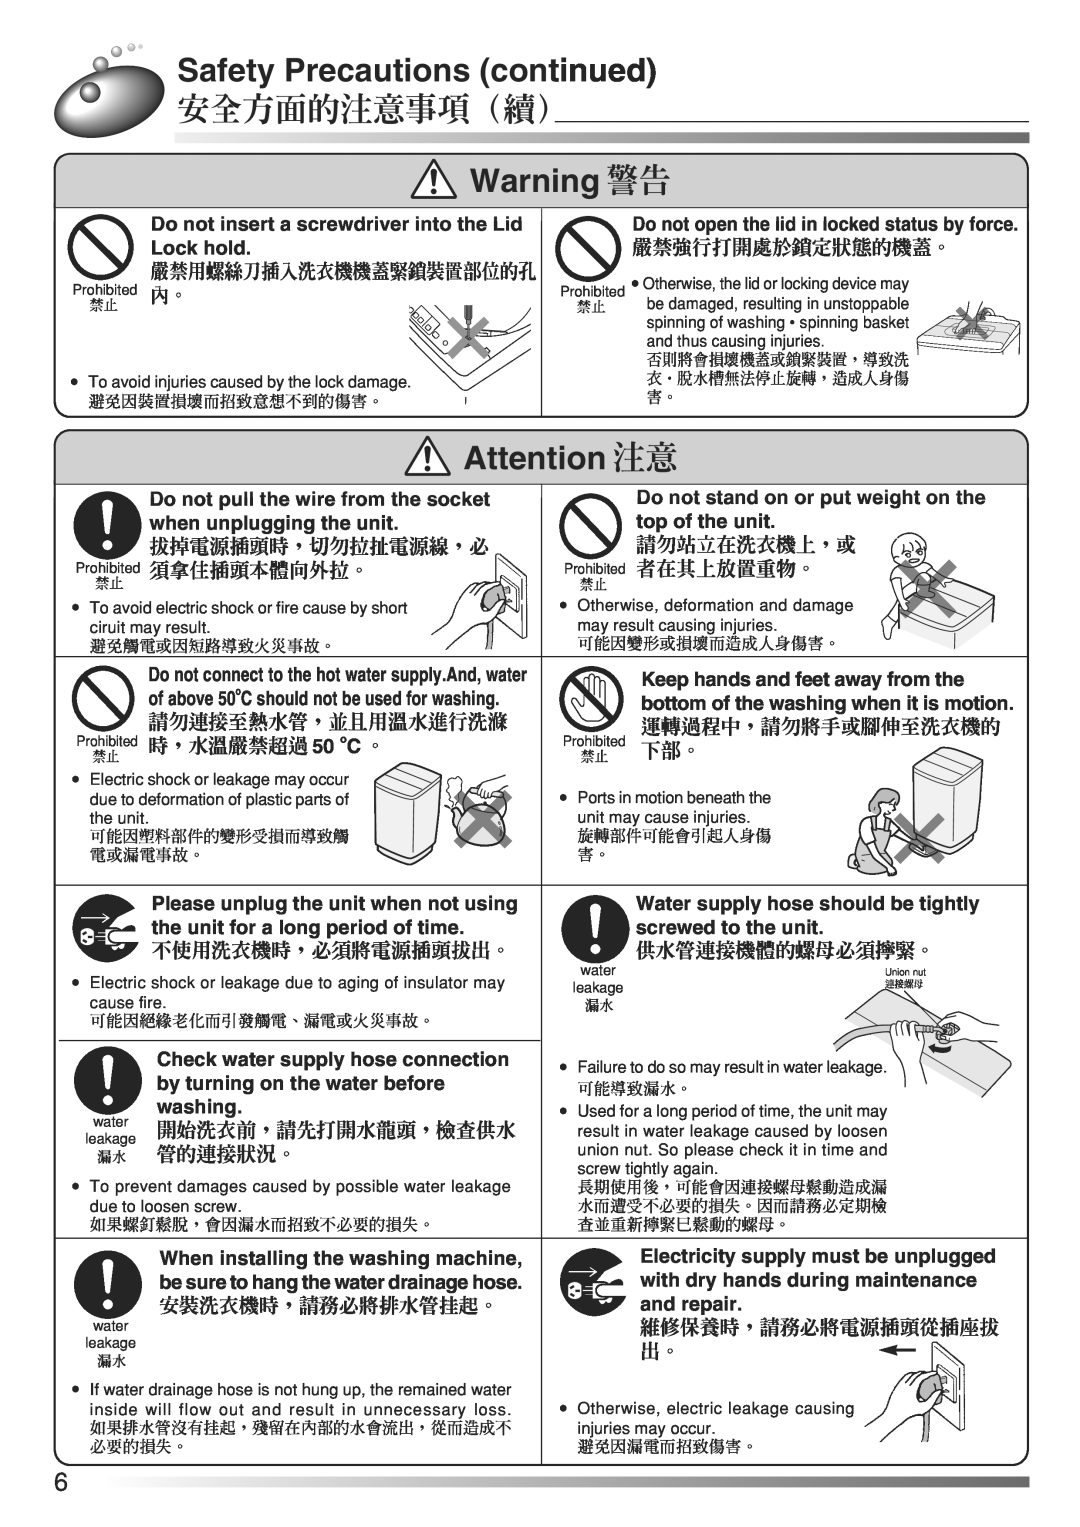 Hitachi AJ-S70KXP Safety Precautions continued, 安全方面的注意事項（續）, Attention 注意, Warning 警告, 嚴禁用螺絲刀插入洗衣機機蓋緊鎖裝置部位的孔, 請勿站立在洗衣機上，或 